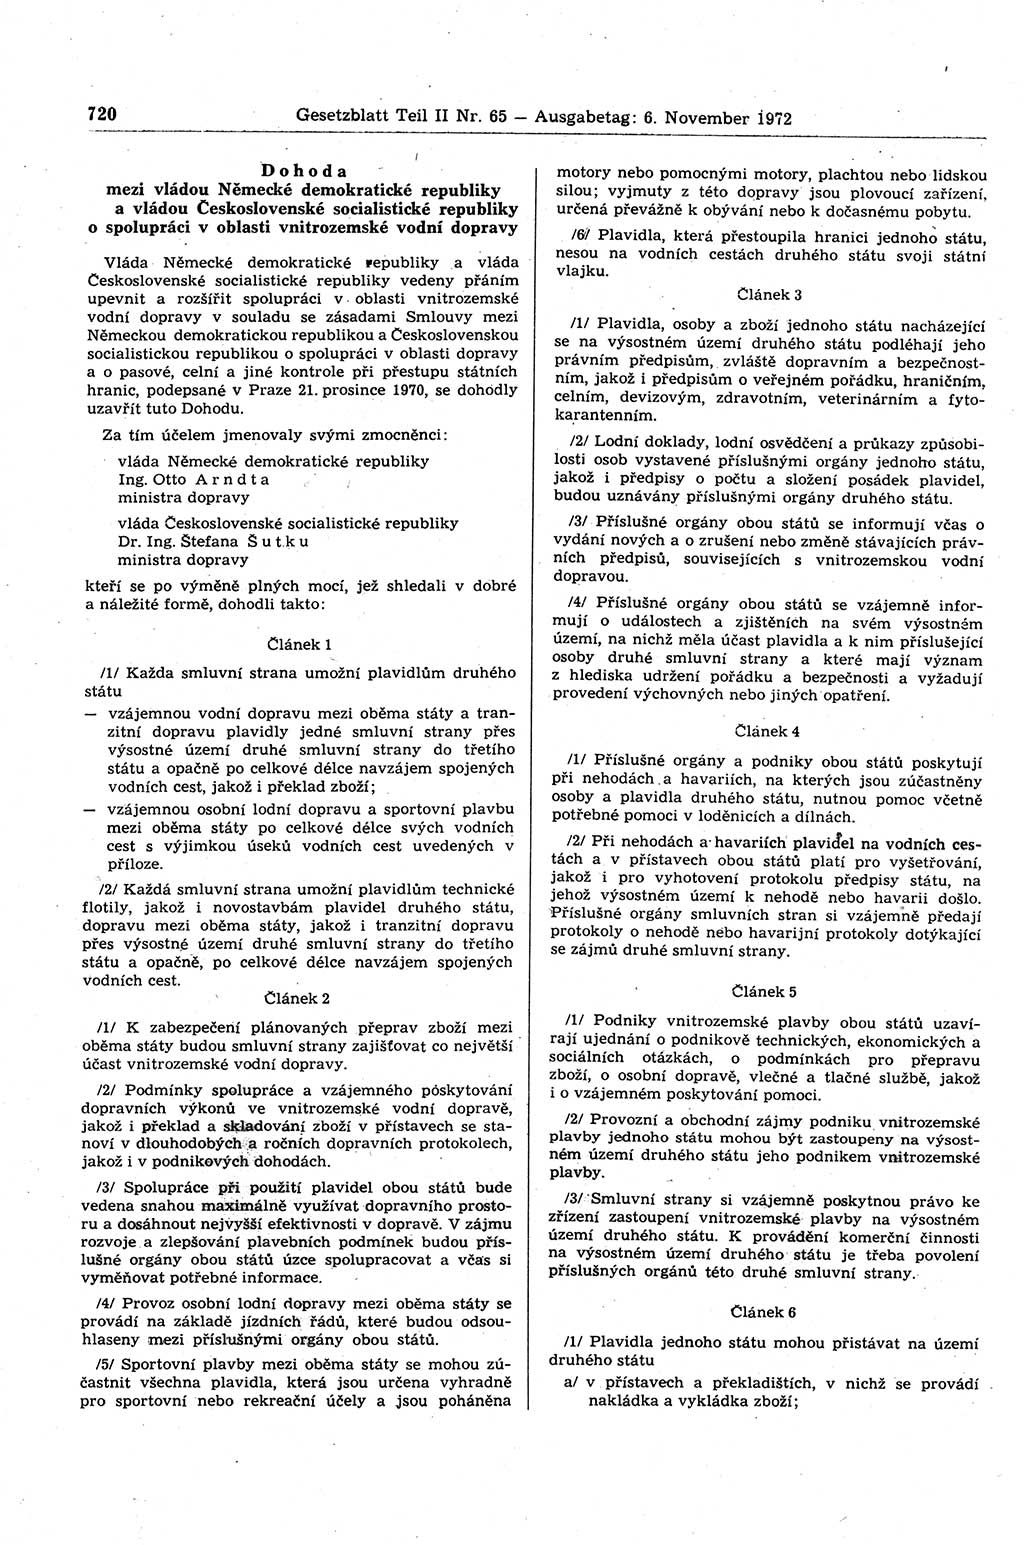 Gesetzblatt (GBl.) der Deutschen Demokratischen Republik (DDR) Teil ⅠⅠ 1972, Seite 720 (GBl. DDR ⅠⅠ 1972, S. 720)